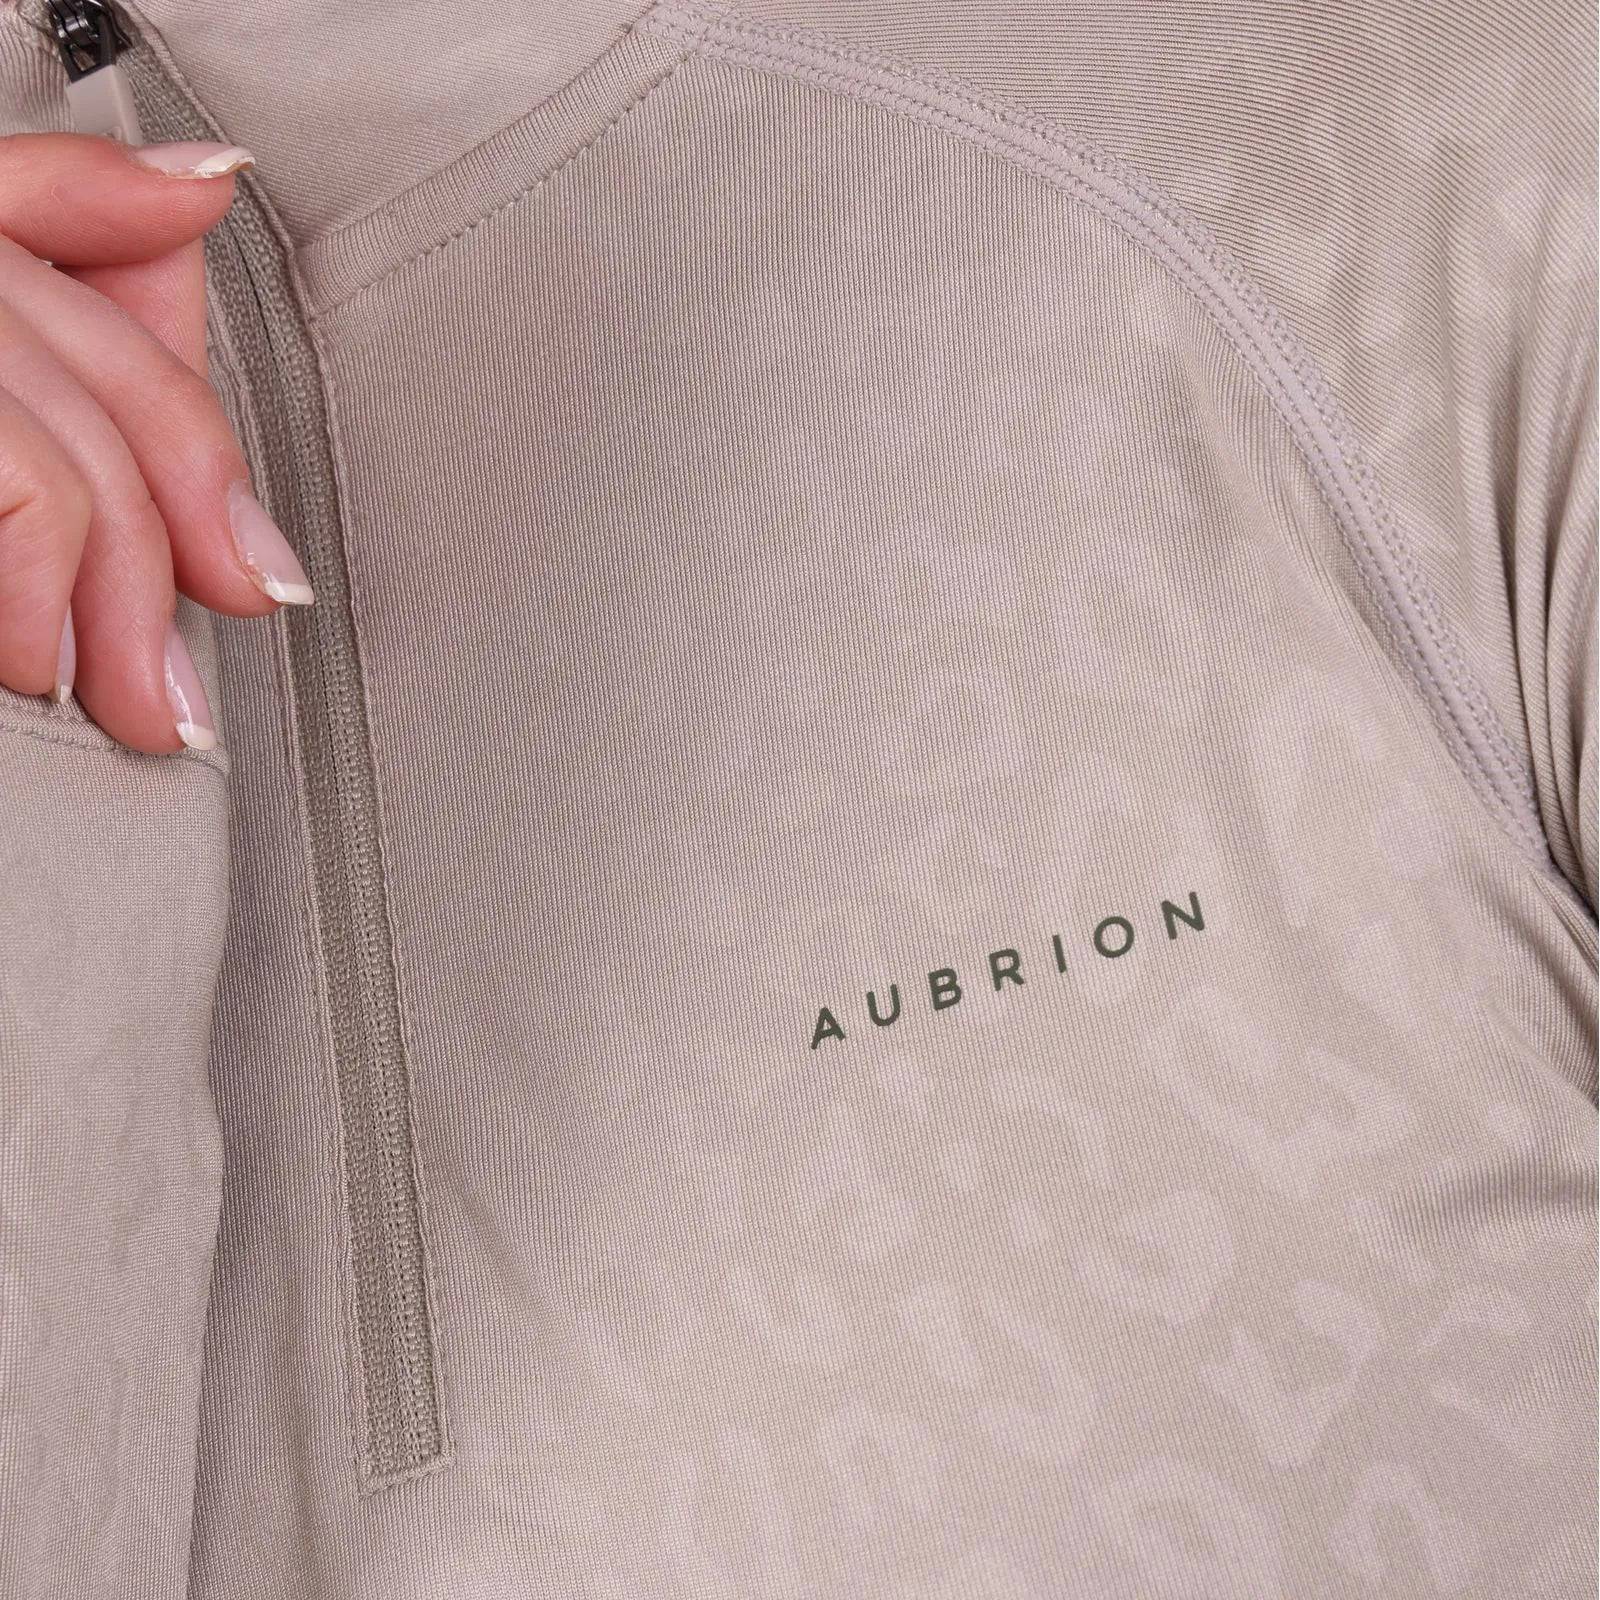 Aubrion Revive Base Layer Shirt